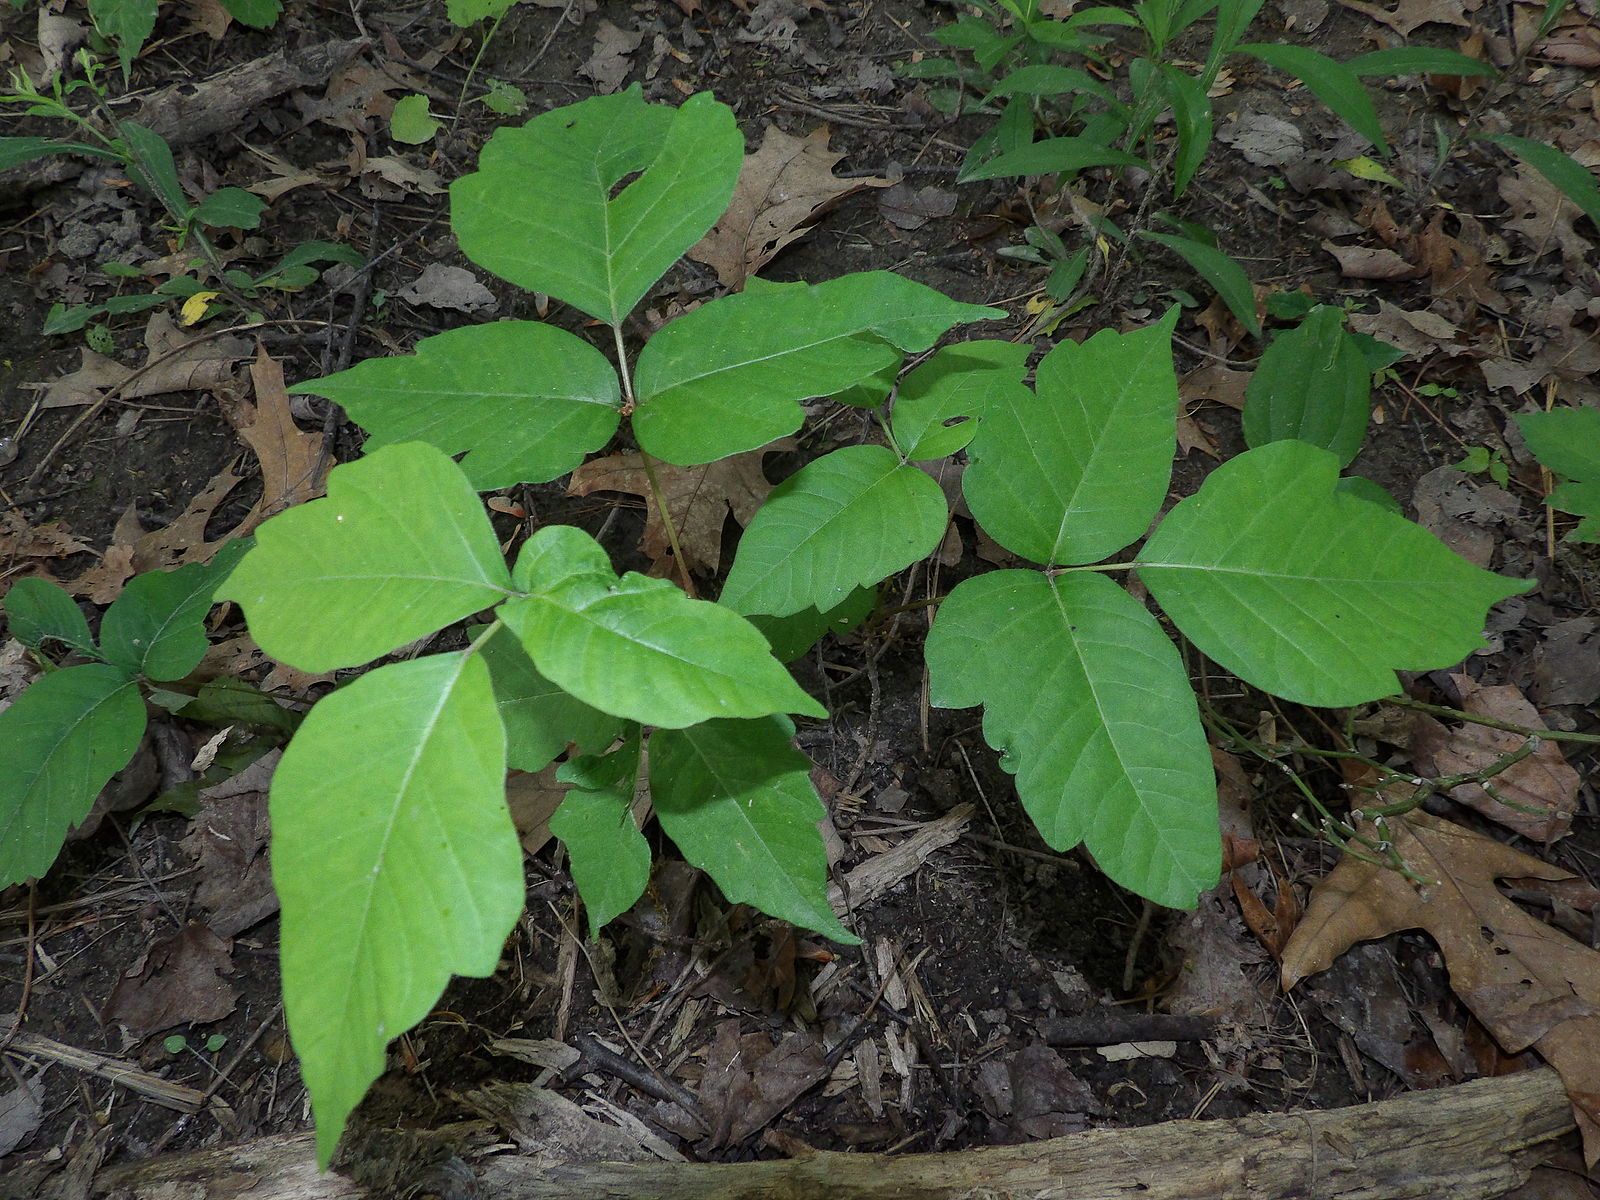 Foliage of poison ivy